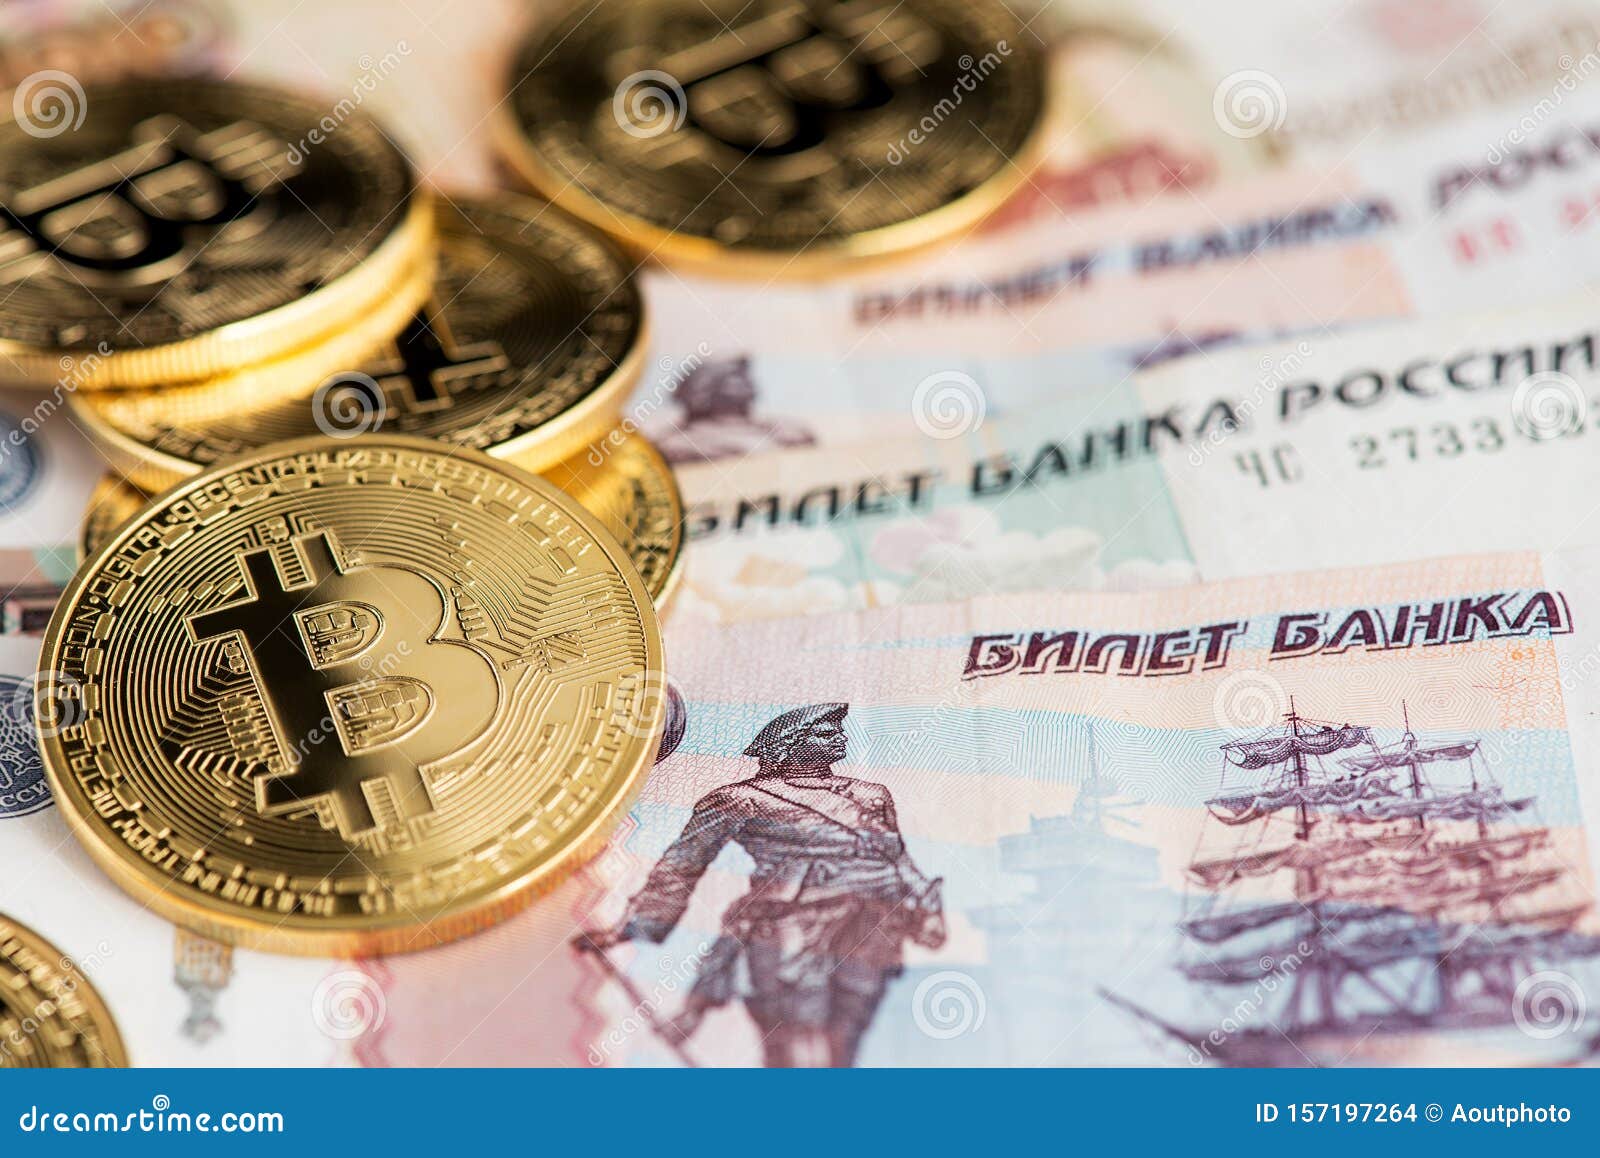 обмена биткоин тенге на рублях